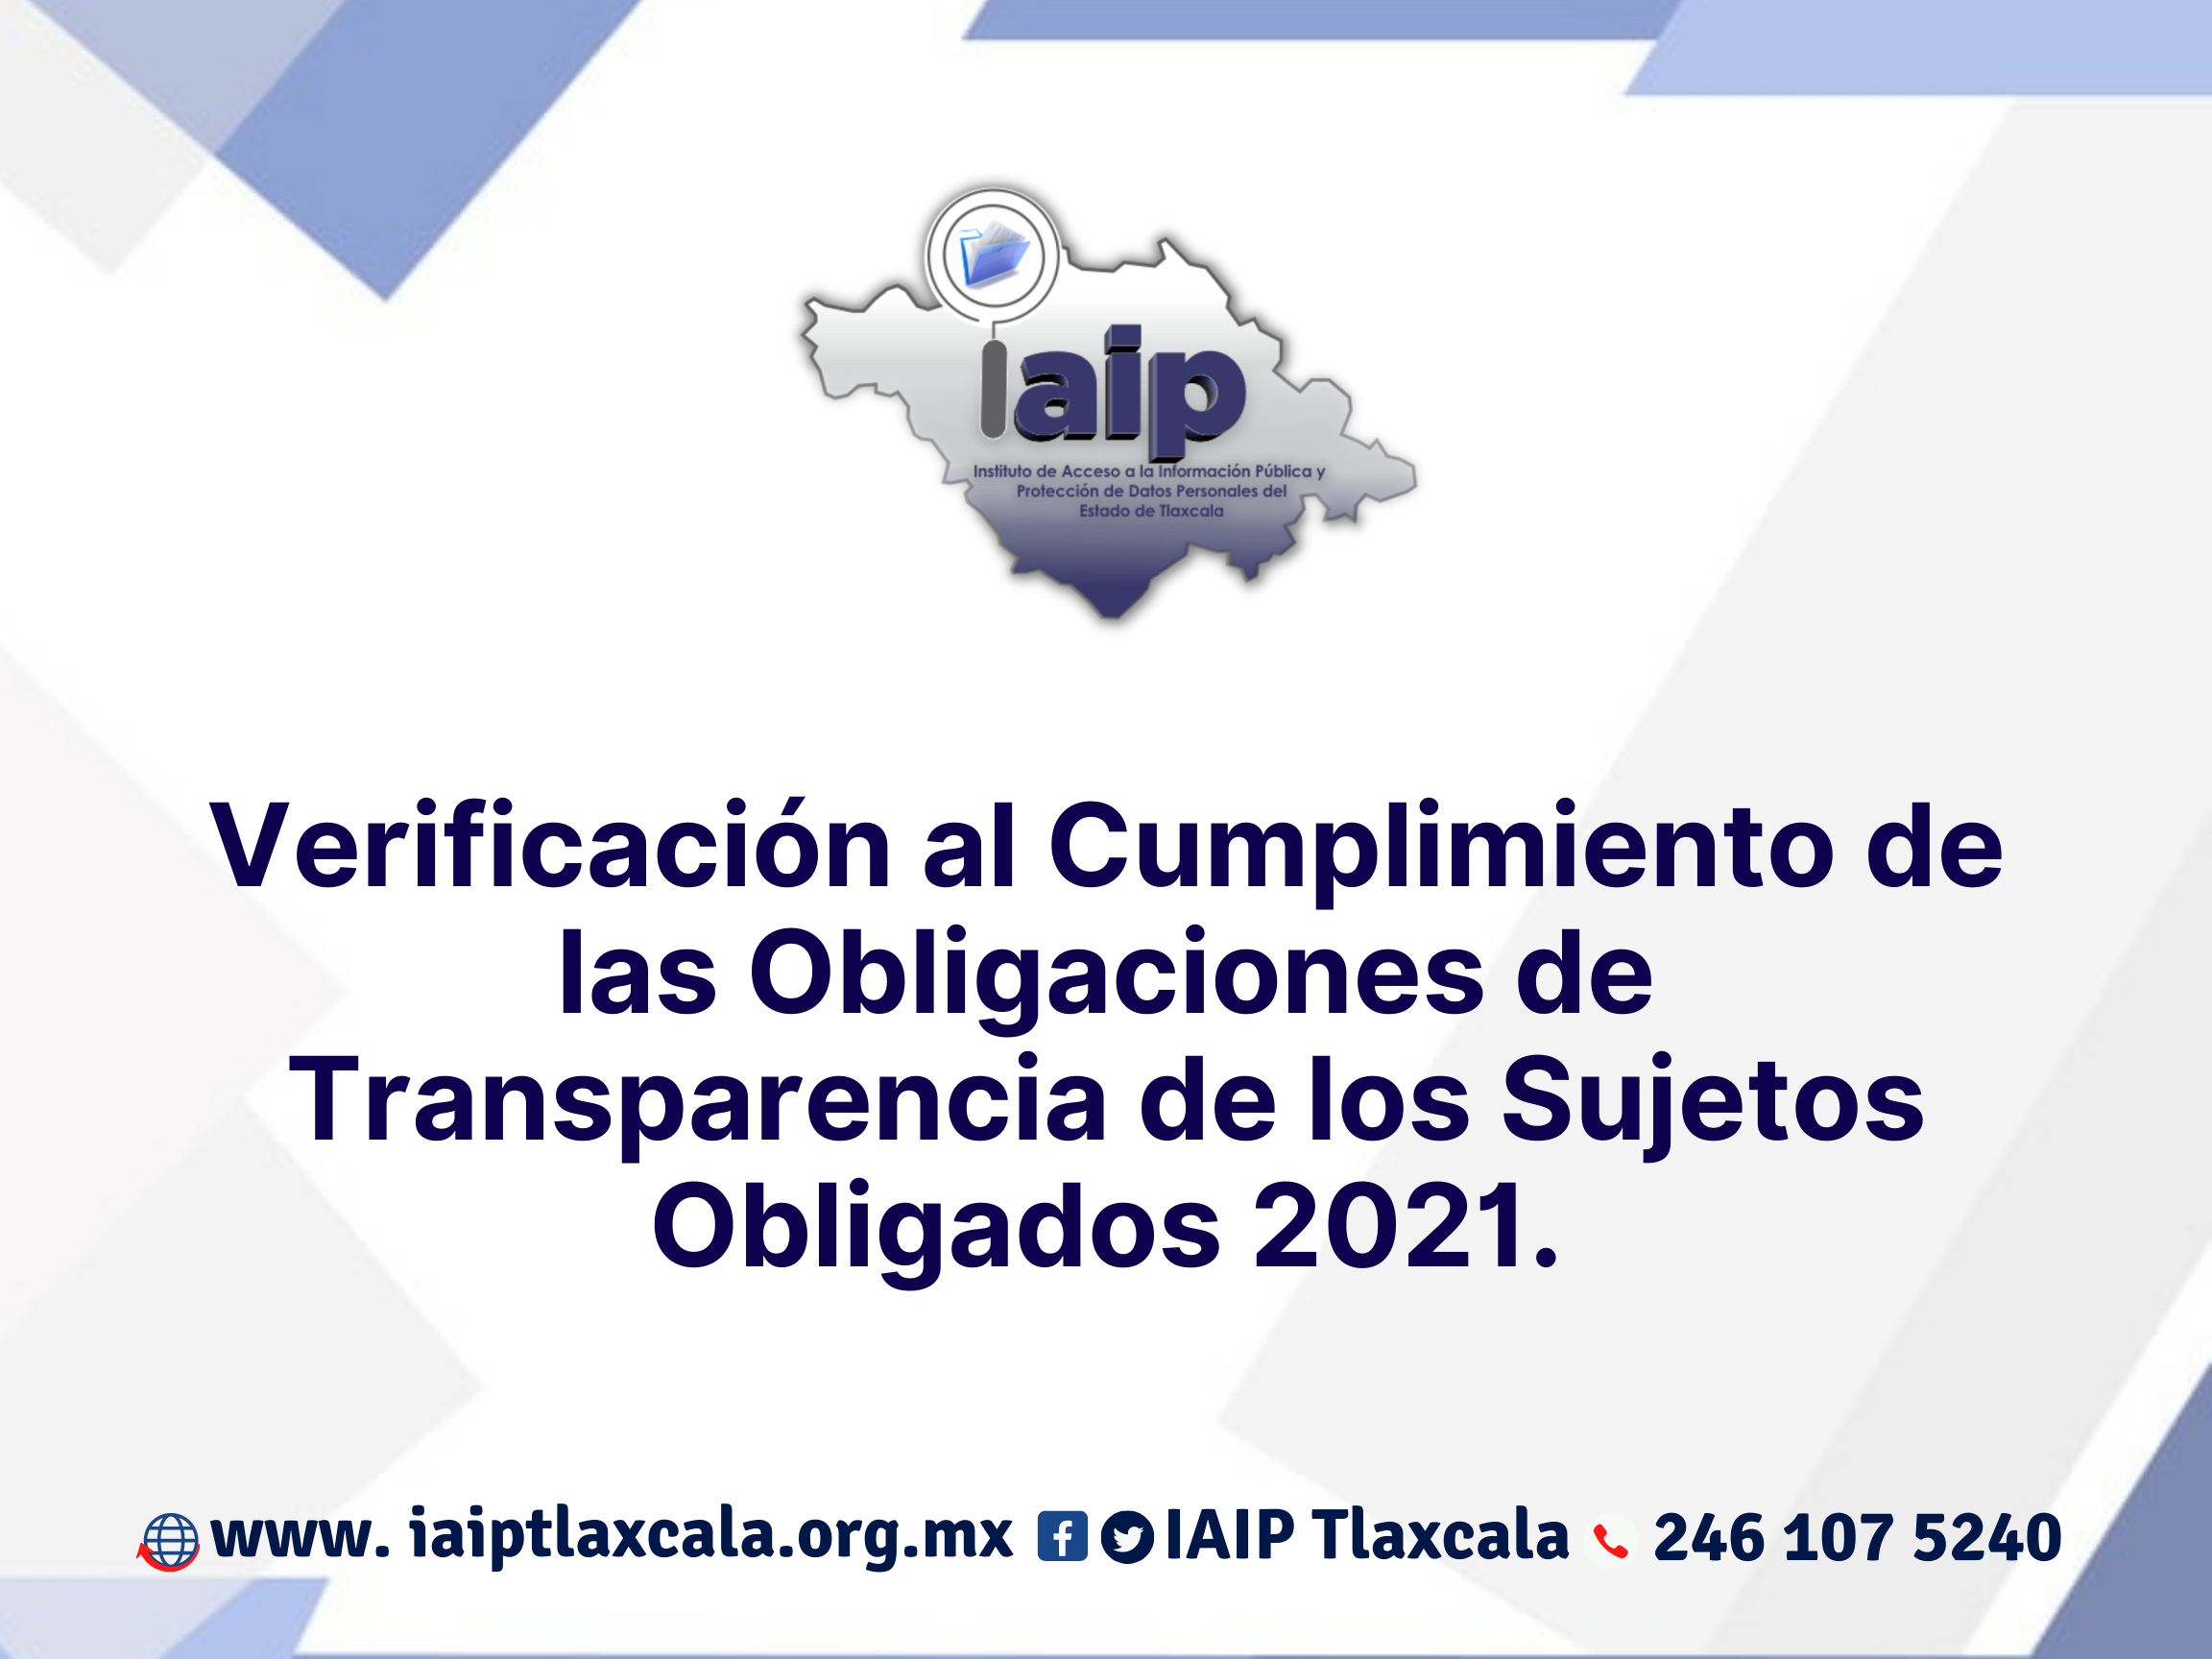 Comisiones de Agua y Partidos Políticos los más omisos en transparencia: IAIP